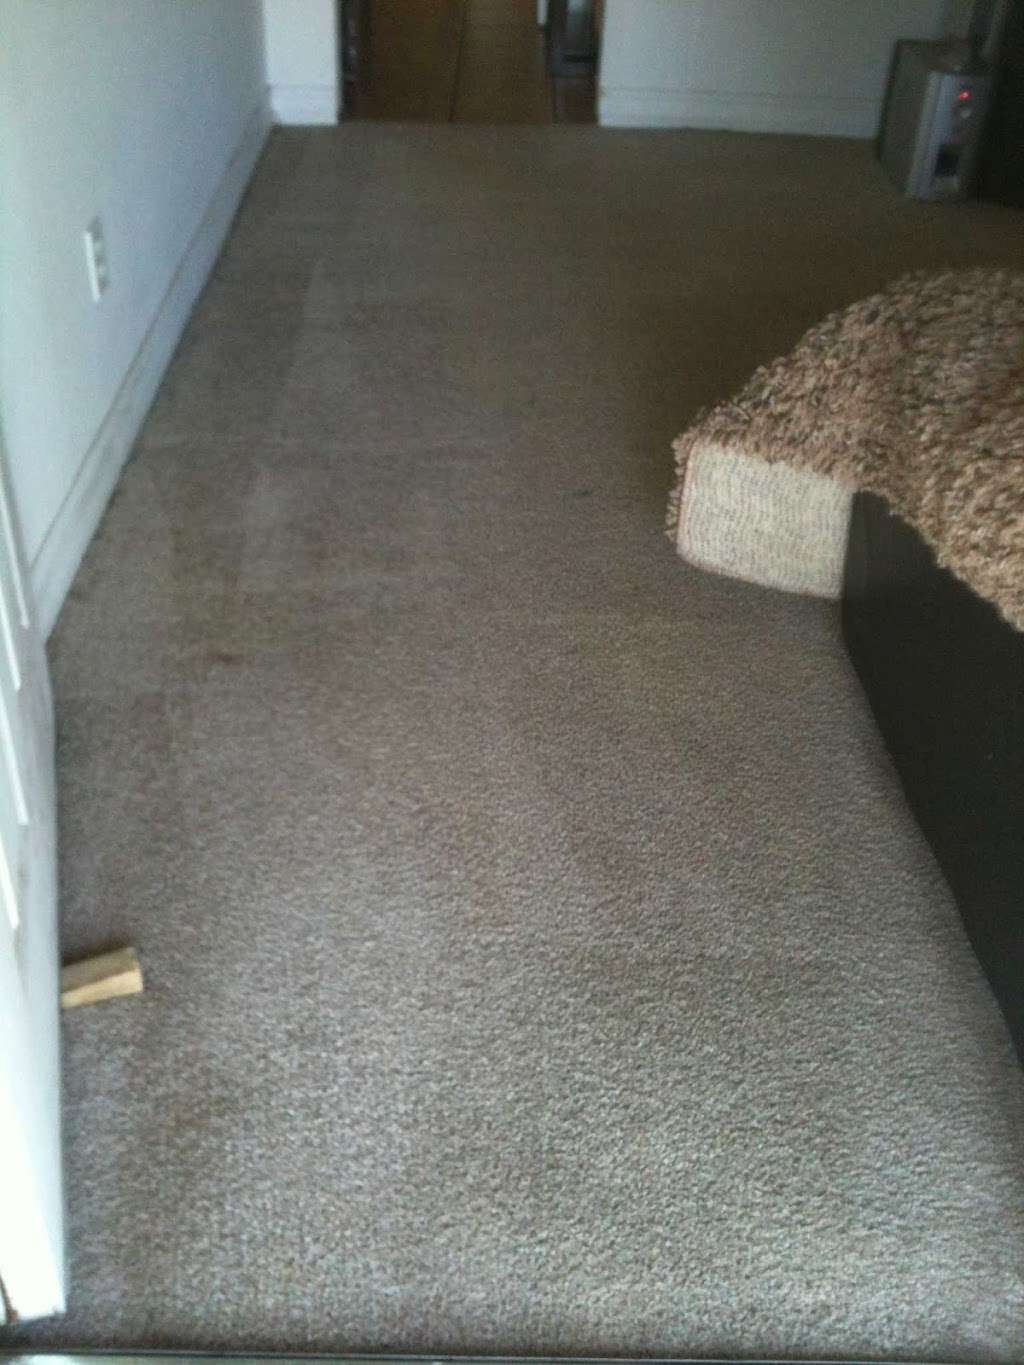 Mira Loma Carpet Cleaning | 5871 Bain St, Mira Loma, CA 91752 | Phone: (951) 888-1238